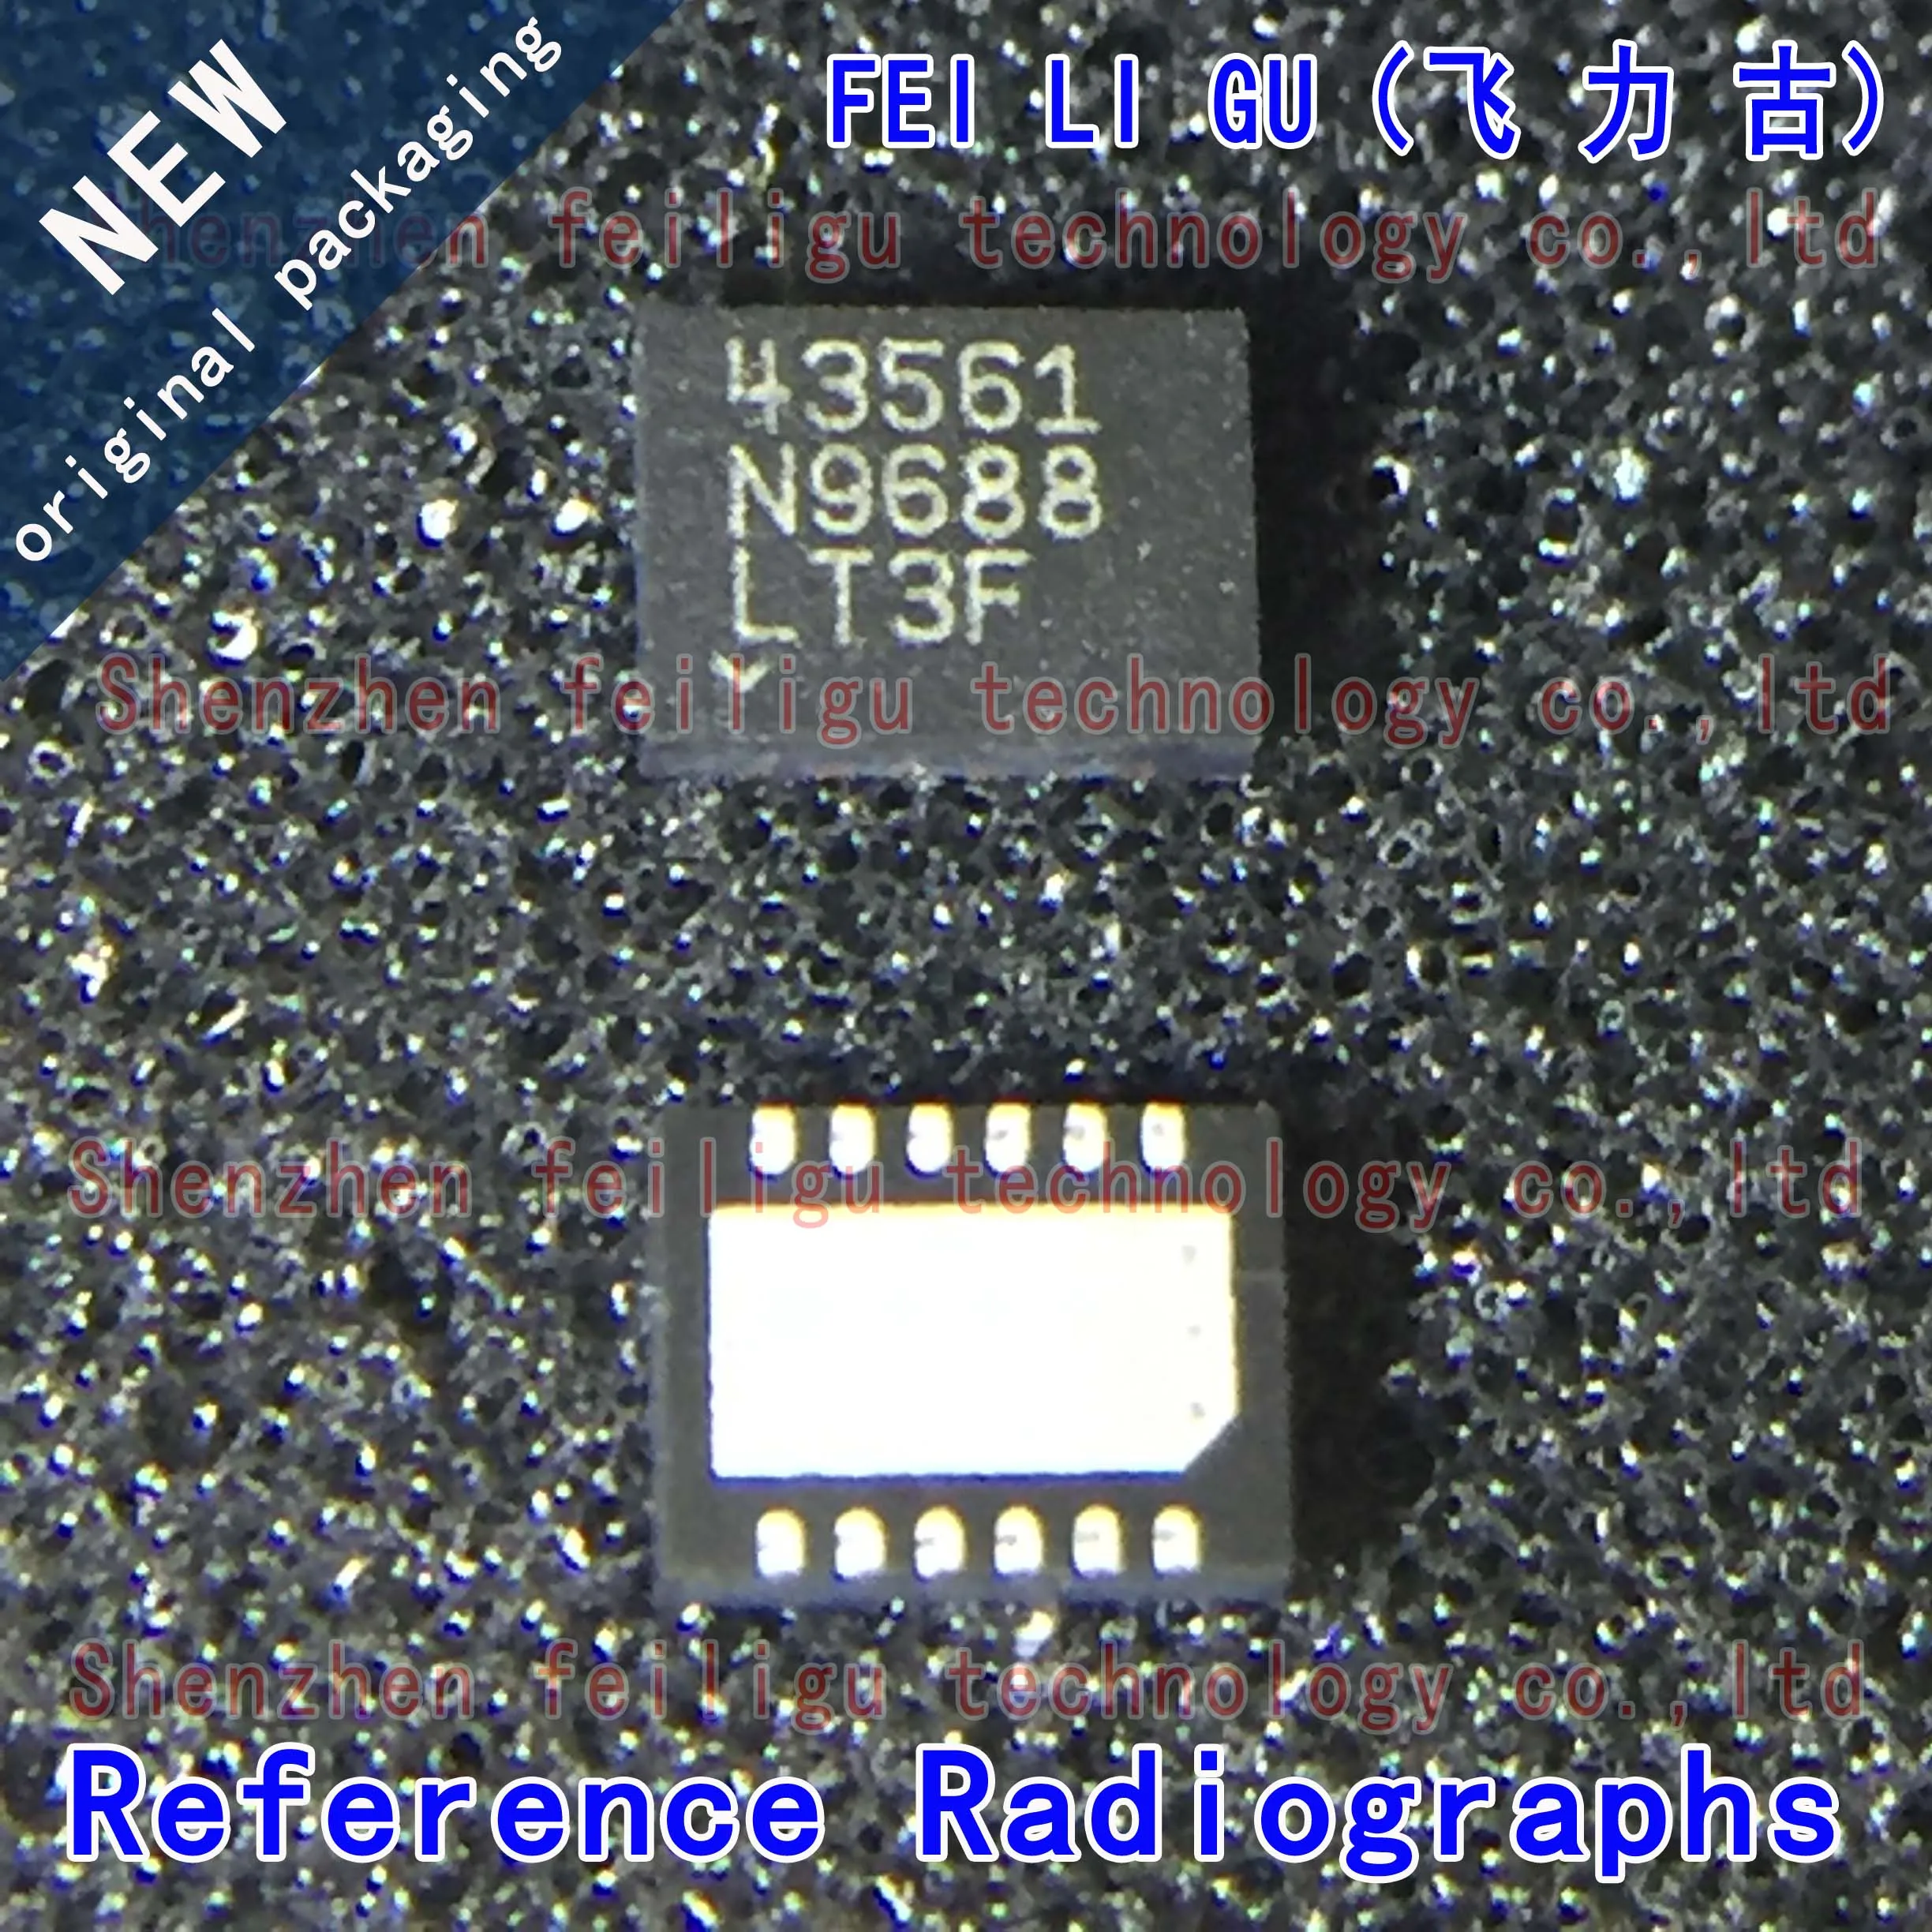 1~30PCS 100% New Original LT4356IDE-1#TRPBF LT4356IDE-1 LT4356IDE LT4356 Silkscreen 43561 QFN12 Surge Suppressor Chip new original lt4356hde 2 trpbf lt4356hde 2 lt4356hde lt4356 silkscreen 43562 qfn12 surge protector chip electronic components